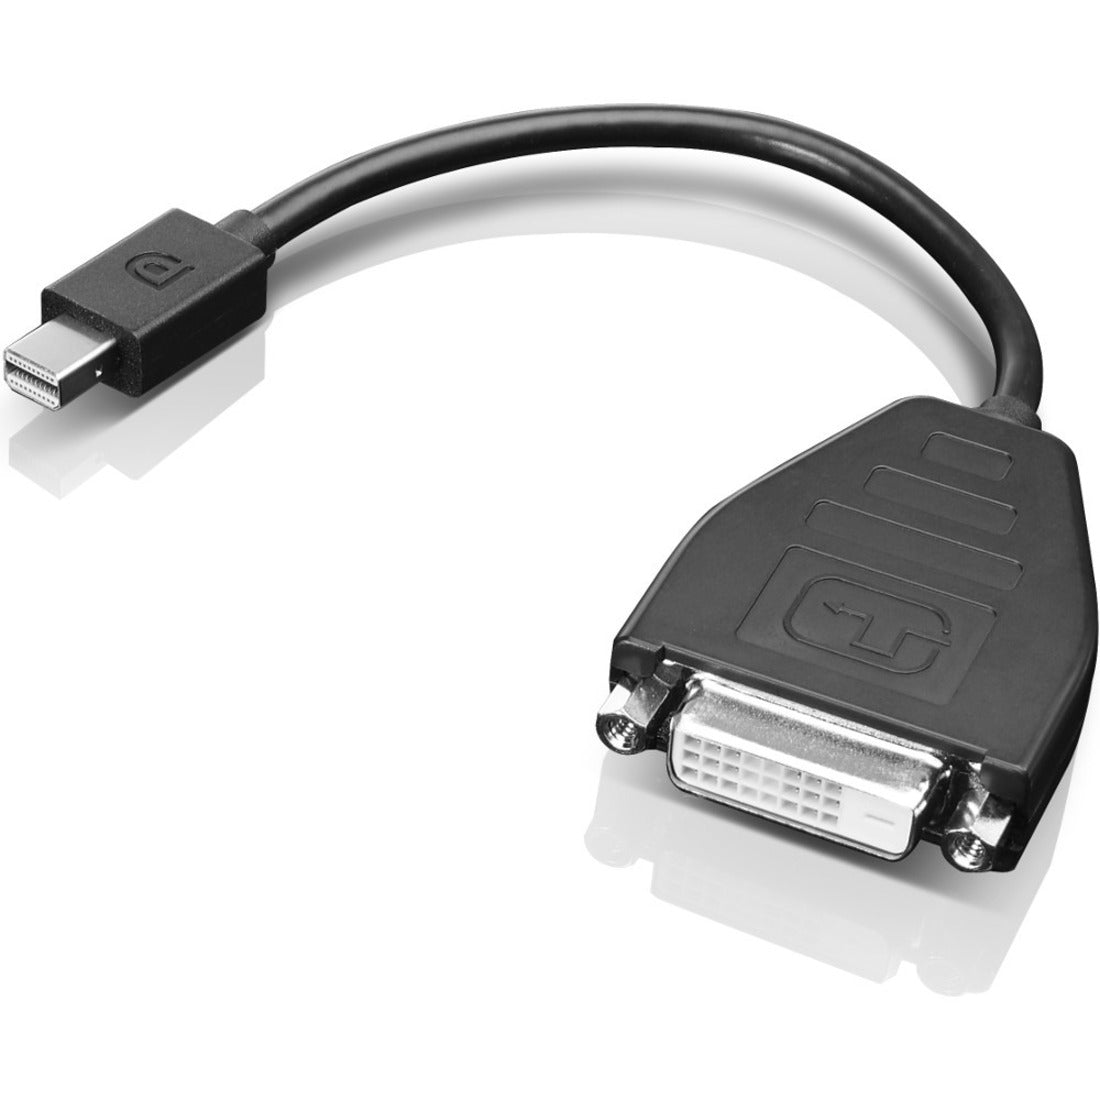 Lenovo 0B47090 미니 디스플레이포트에서 DVI-D 어댑터 케이블 (싱글 링크) 연결 쉽게 당신의 장치 연결하세요.